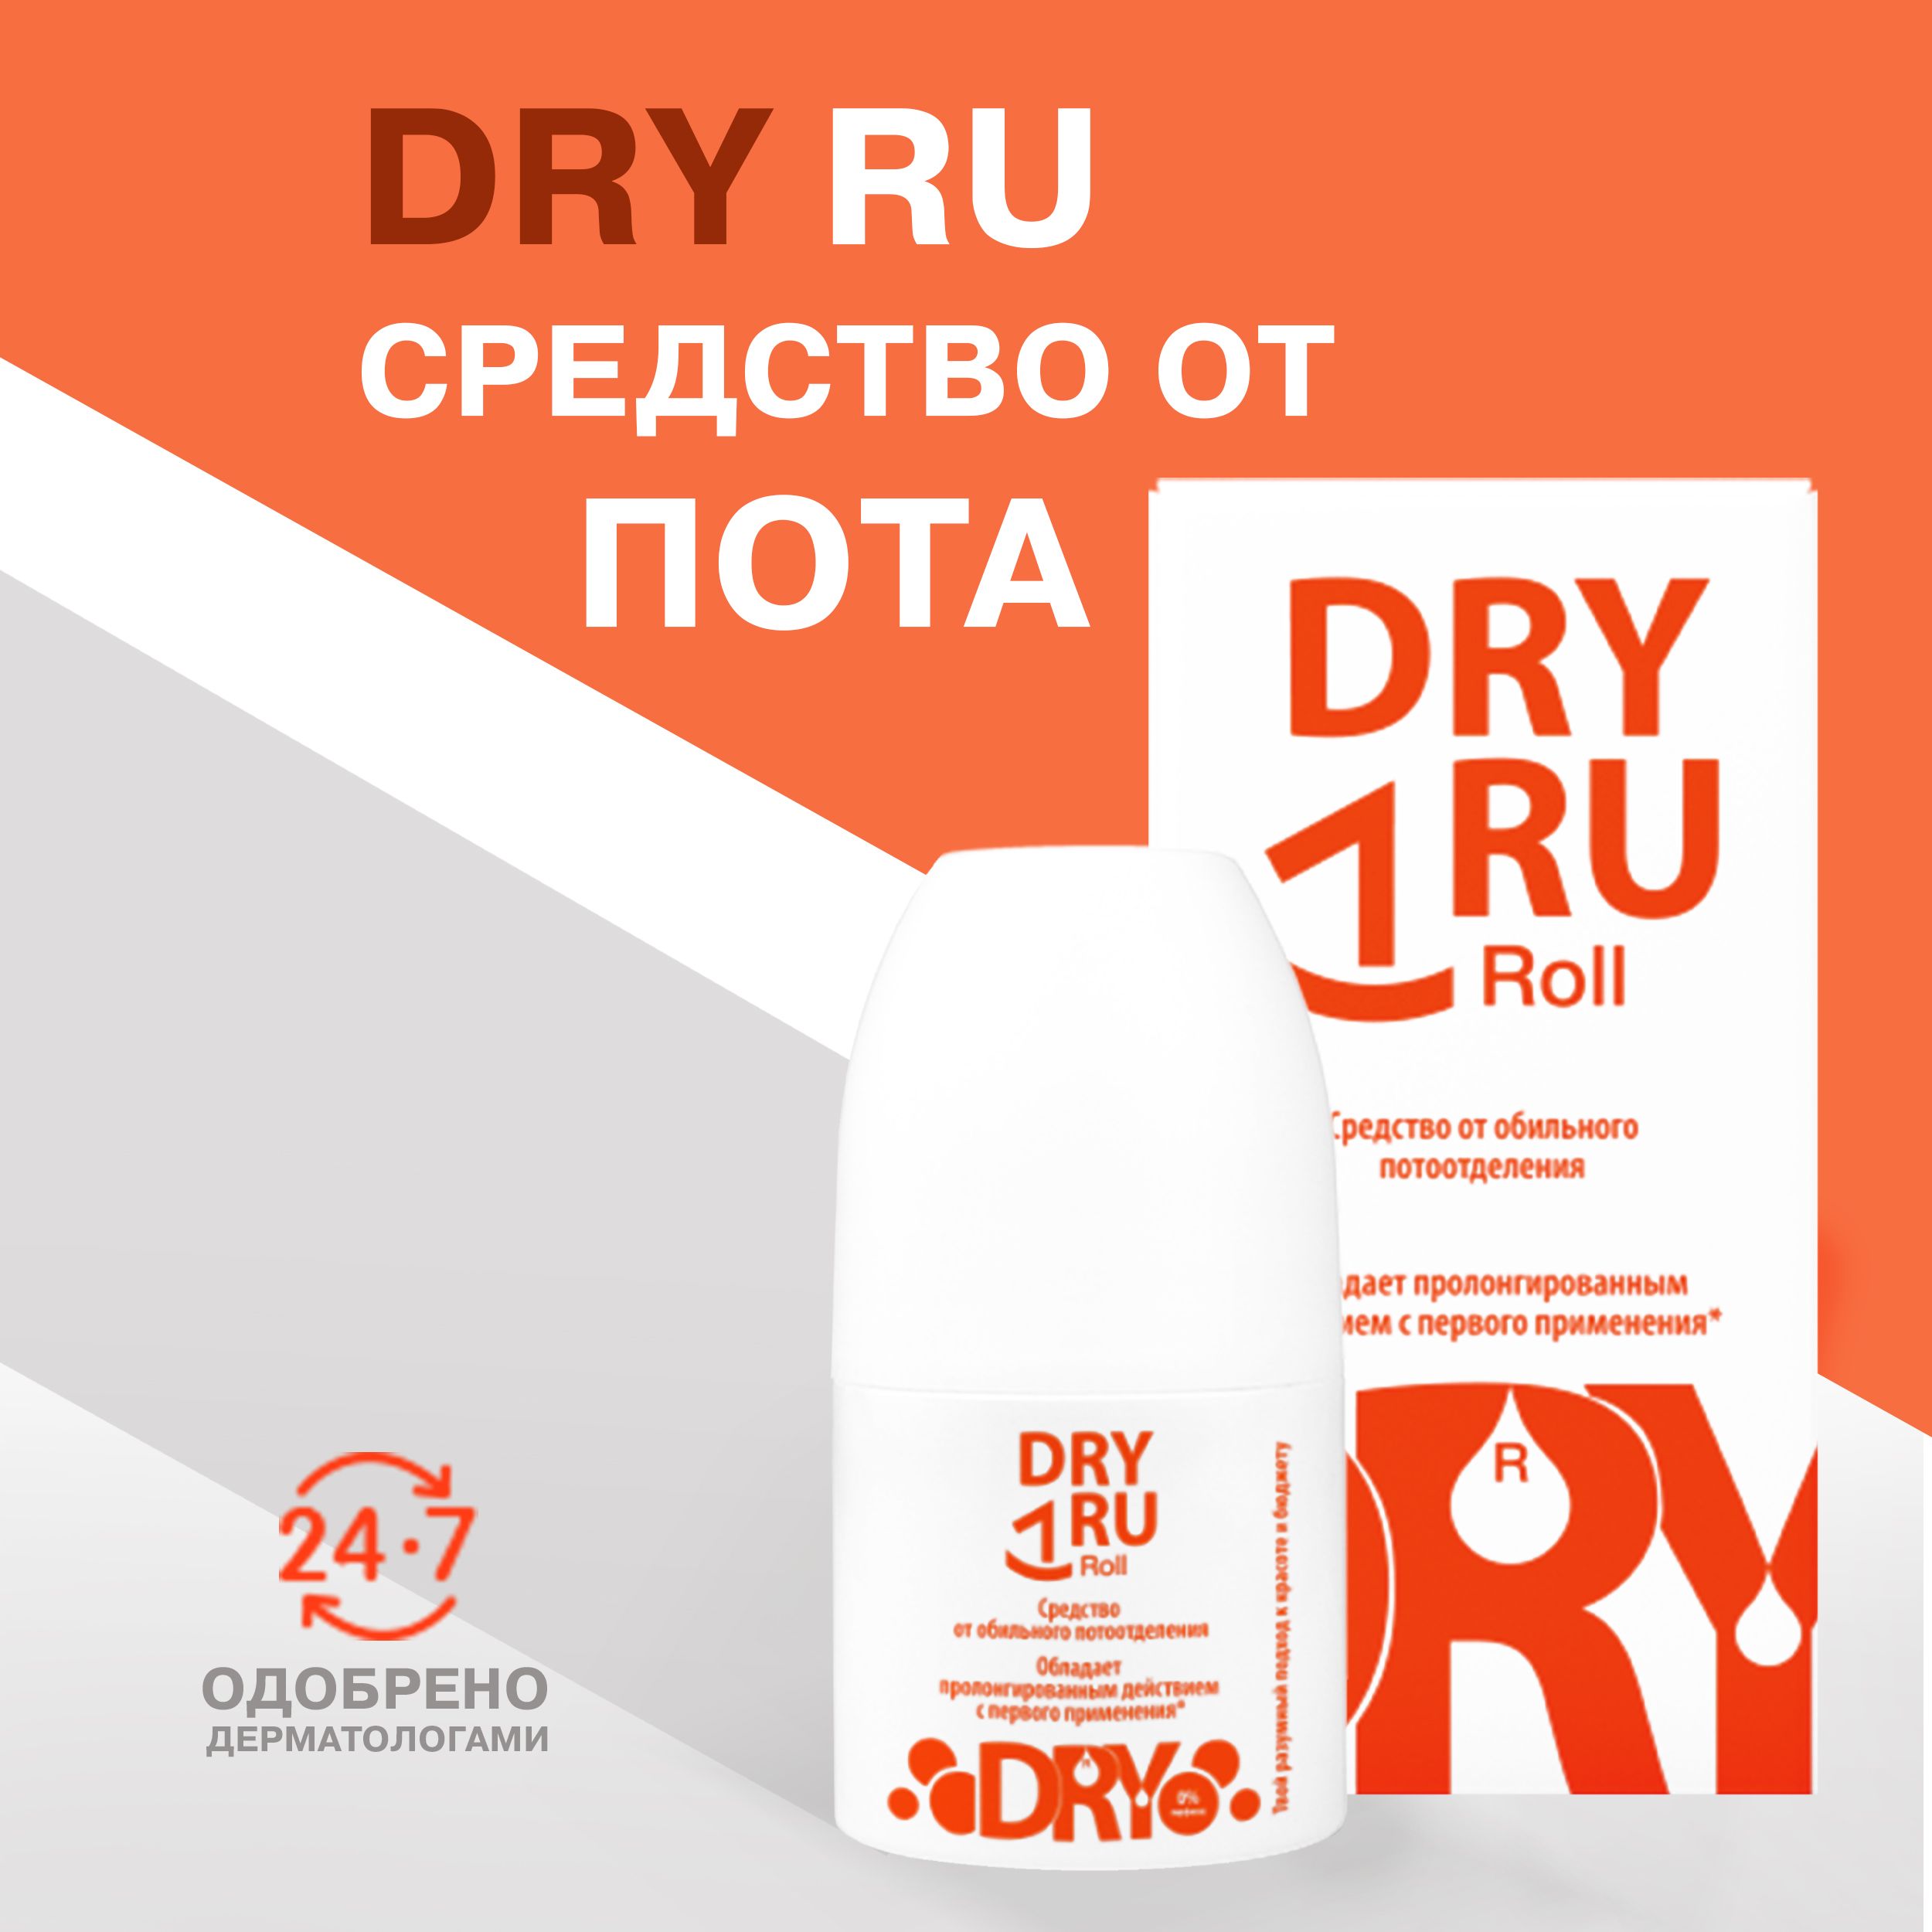 Dry ru Roll. Драй ру ролл. Dry ru. Small Dry Roll. Dry ru отзывы